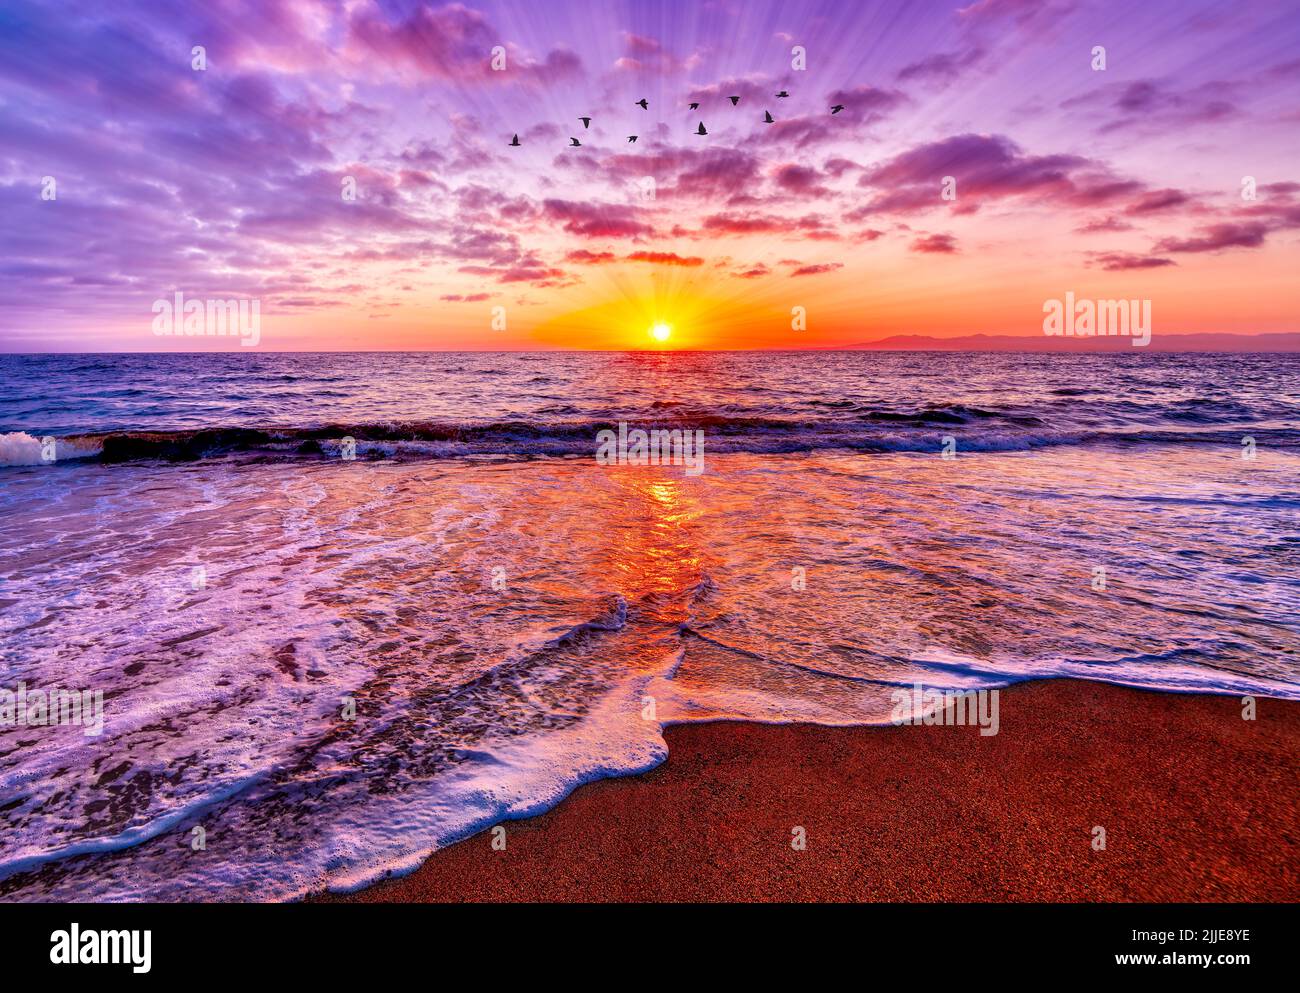 Los rayos del sol están reventando en el horizonte del océano con pájaros volando contra Un cielo de puesta de sol vívido y colorido Foto de stock